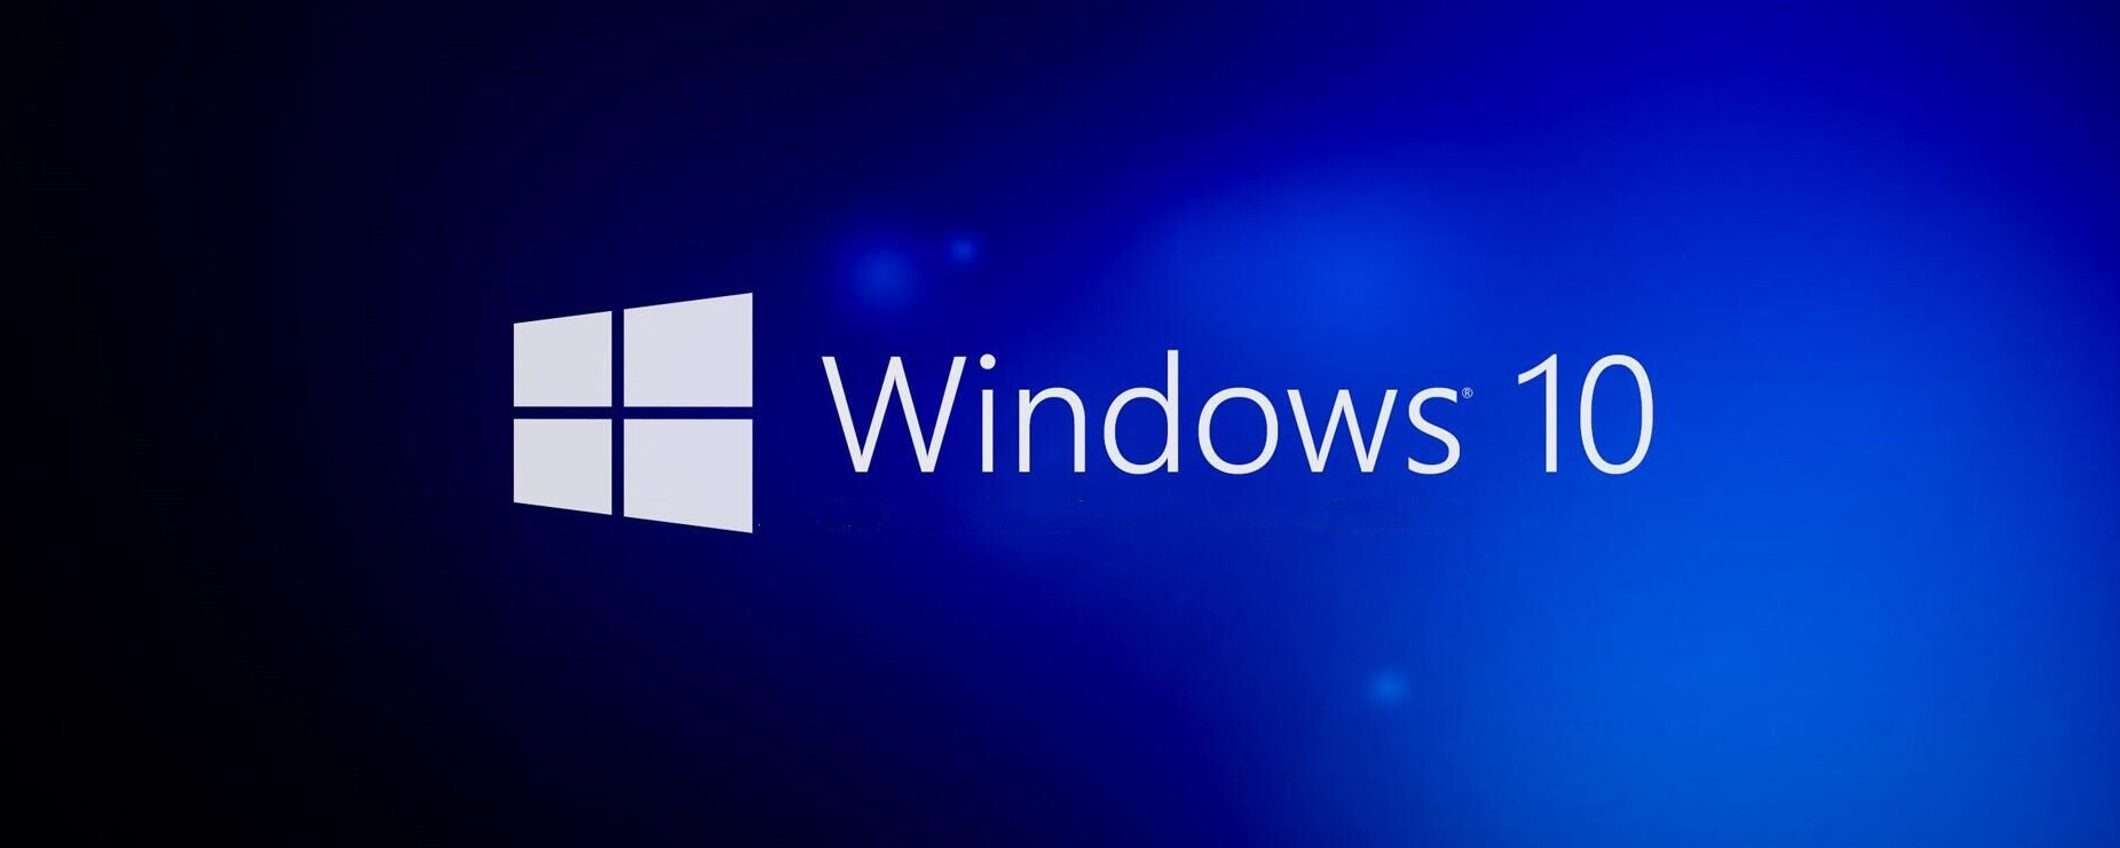 Windows 10: problemi audio con KB5015878 e KB5016616